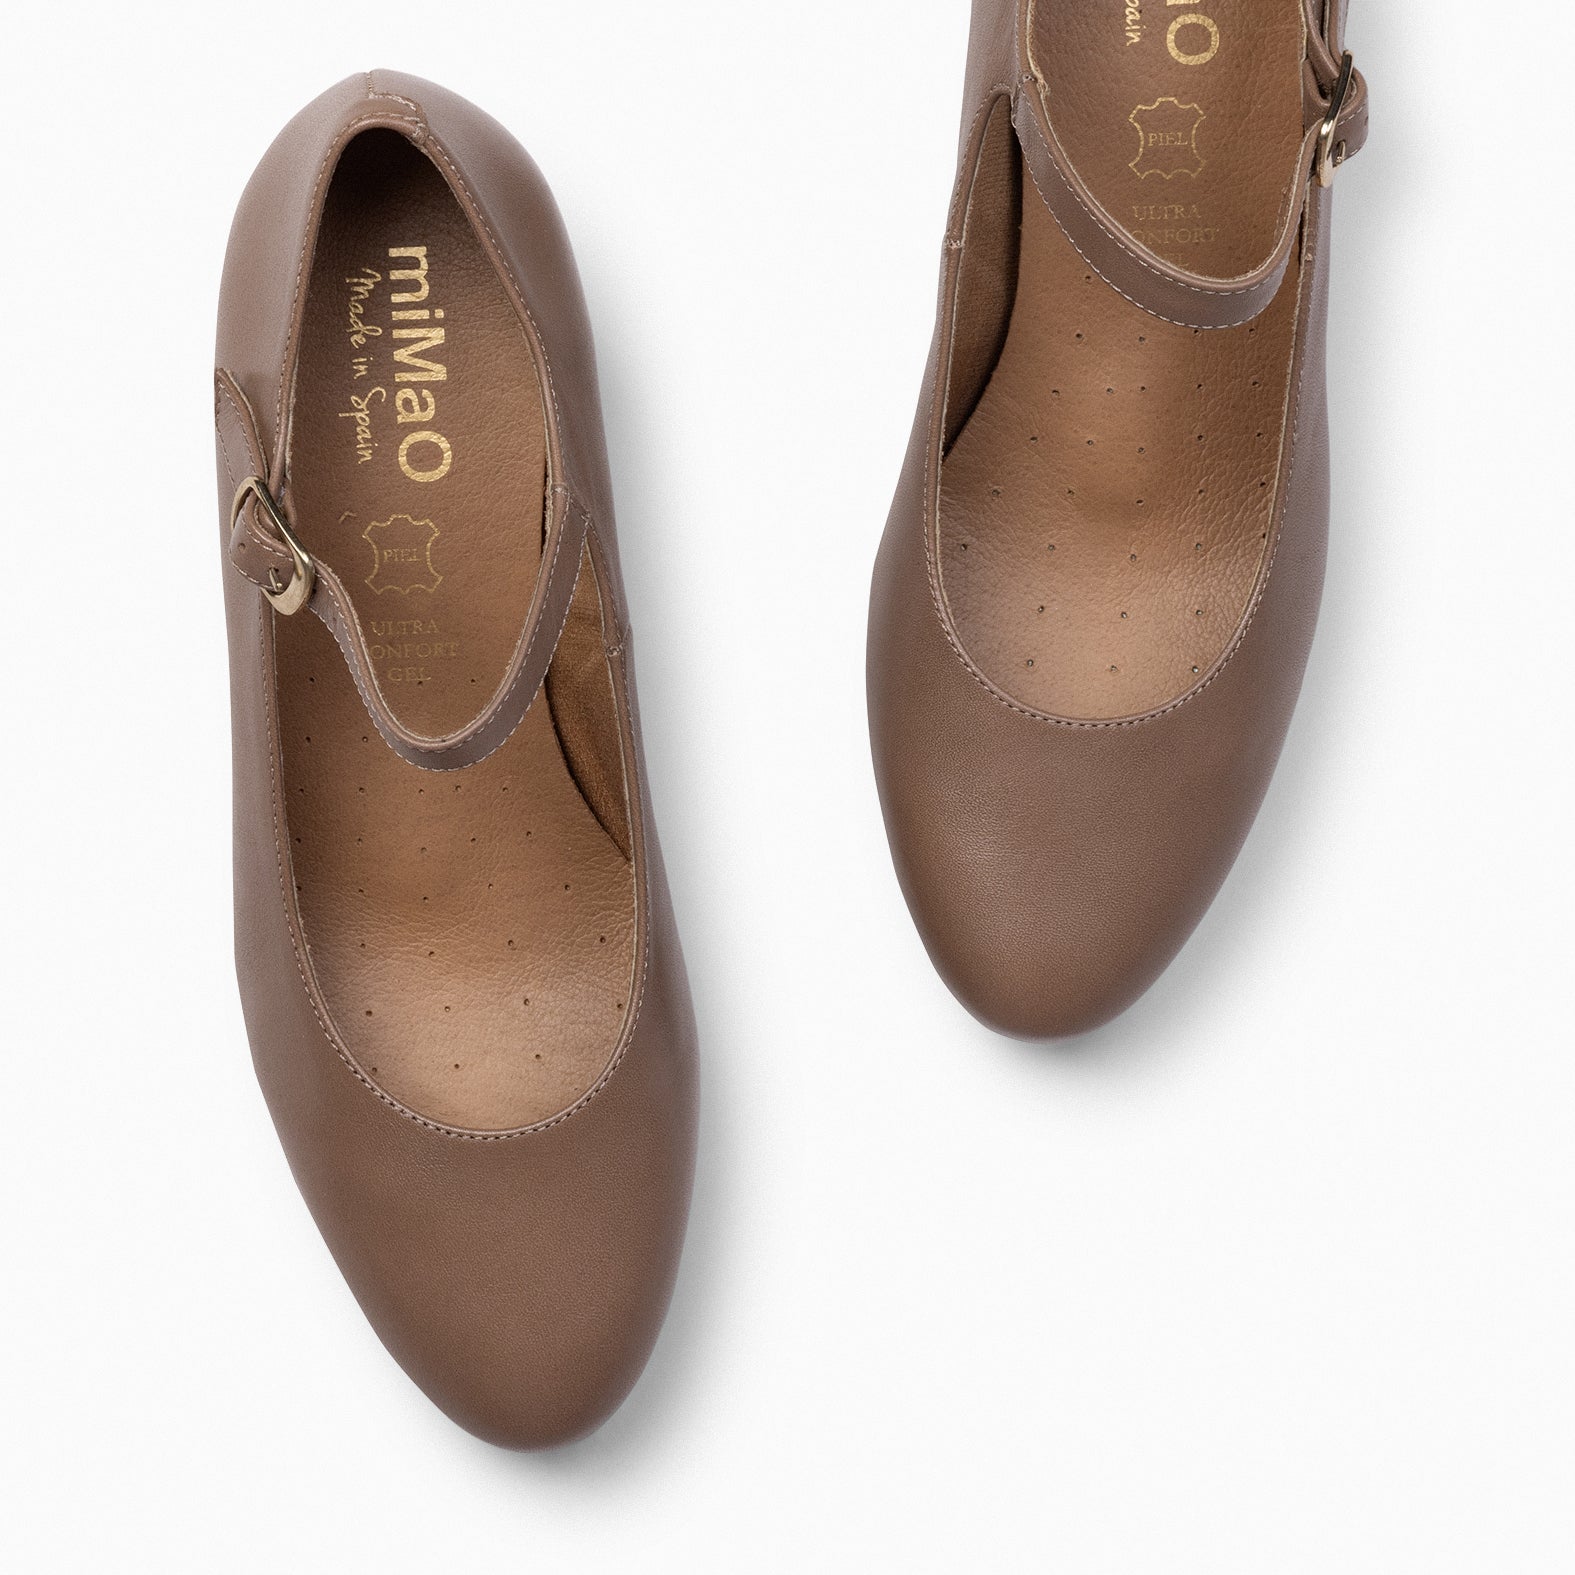 AZAFATA PULSERA – Zapatos de mujer con plataforma y tacón bajo TAUPE